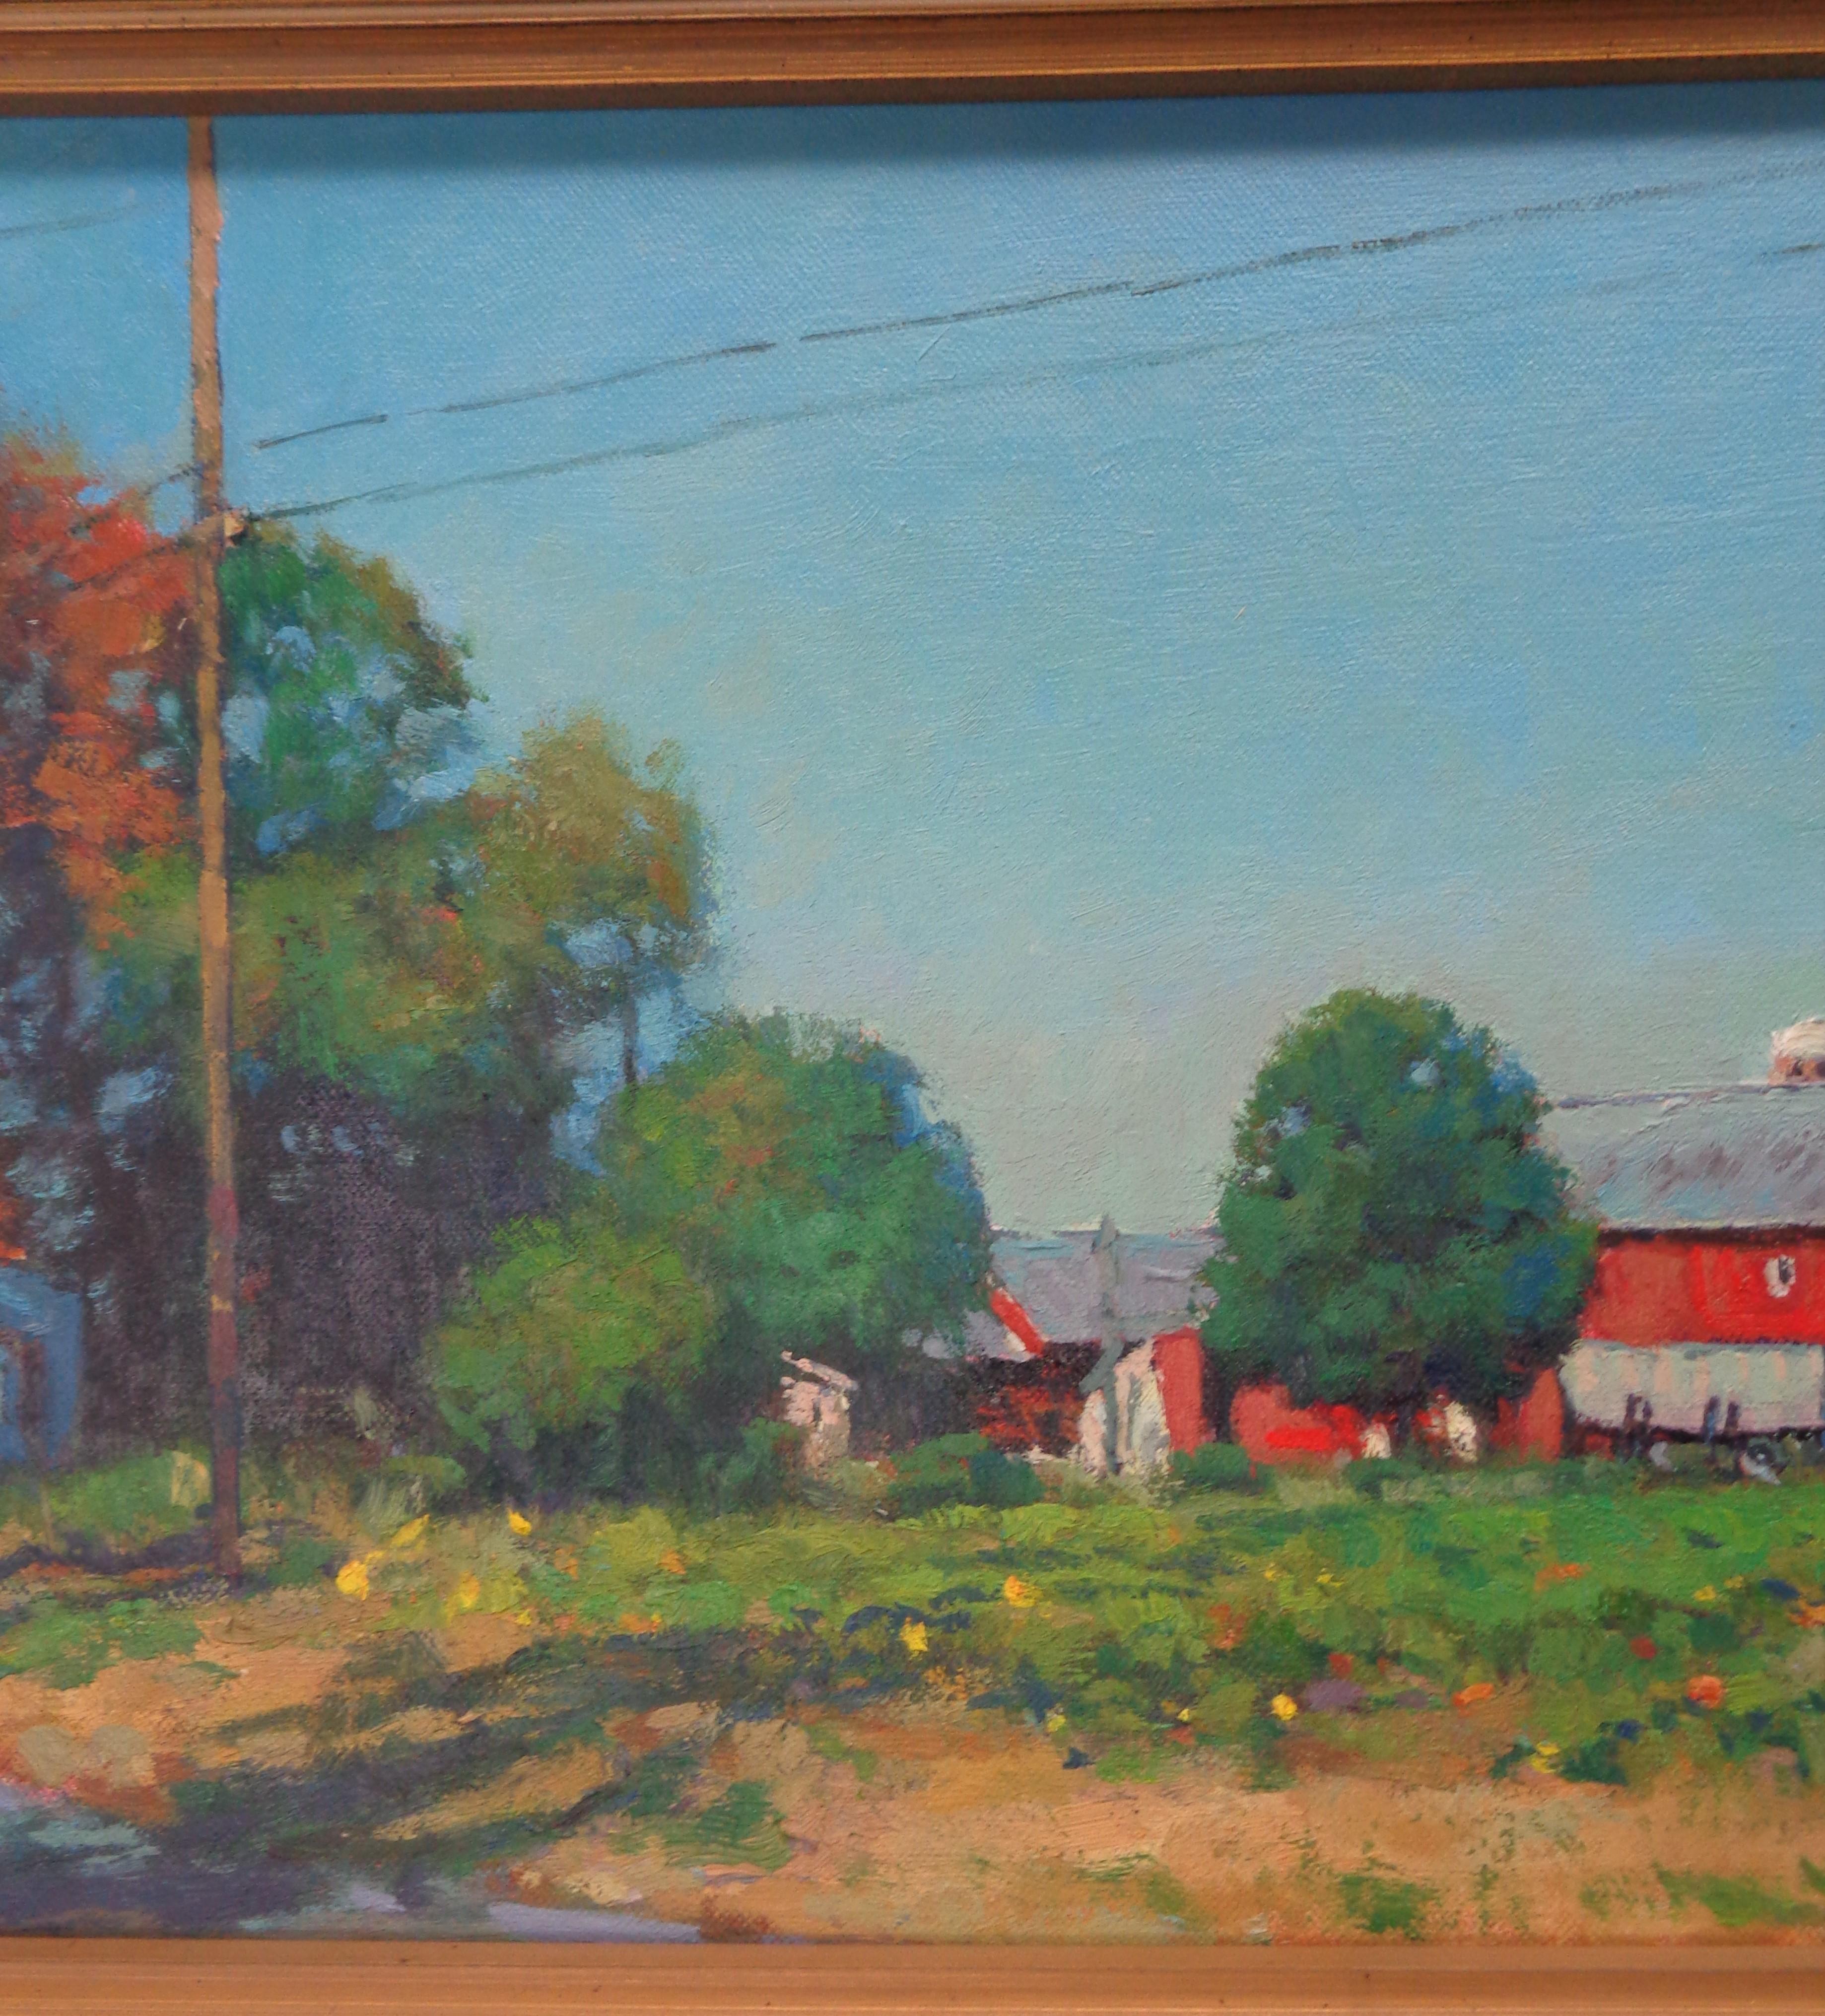  Impressionistic Rural Farm Landscape Painting Michael Budden Autumn Farm For Sale 3